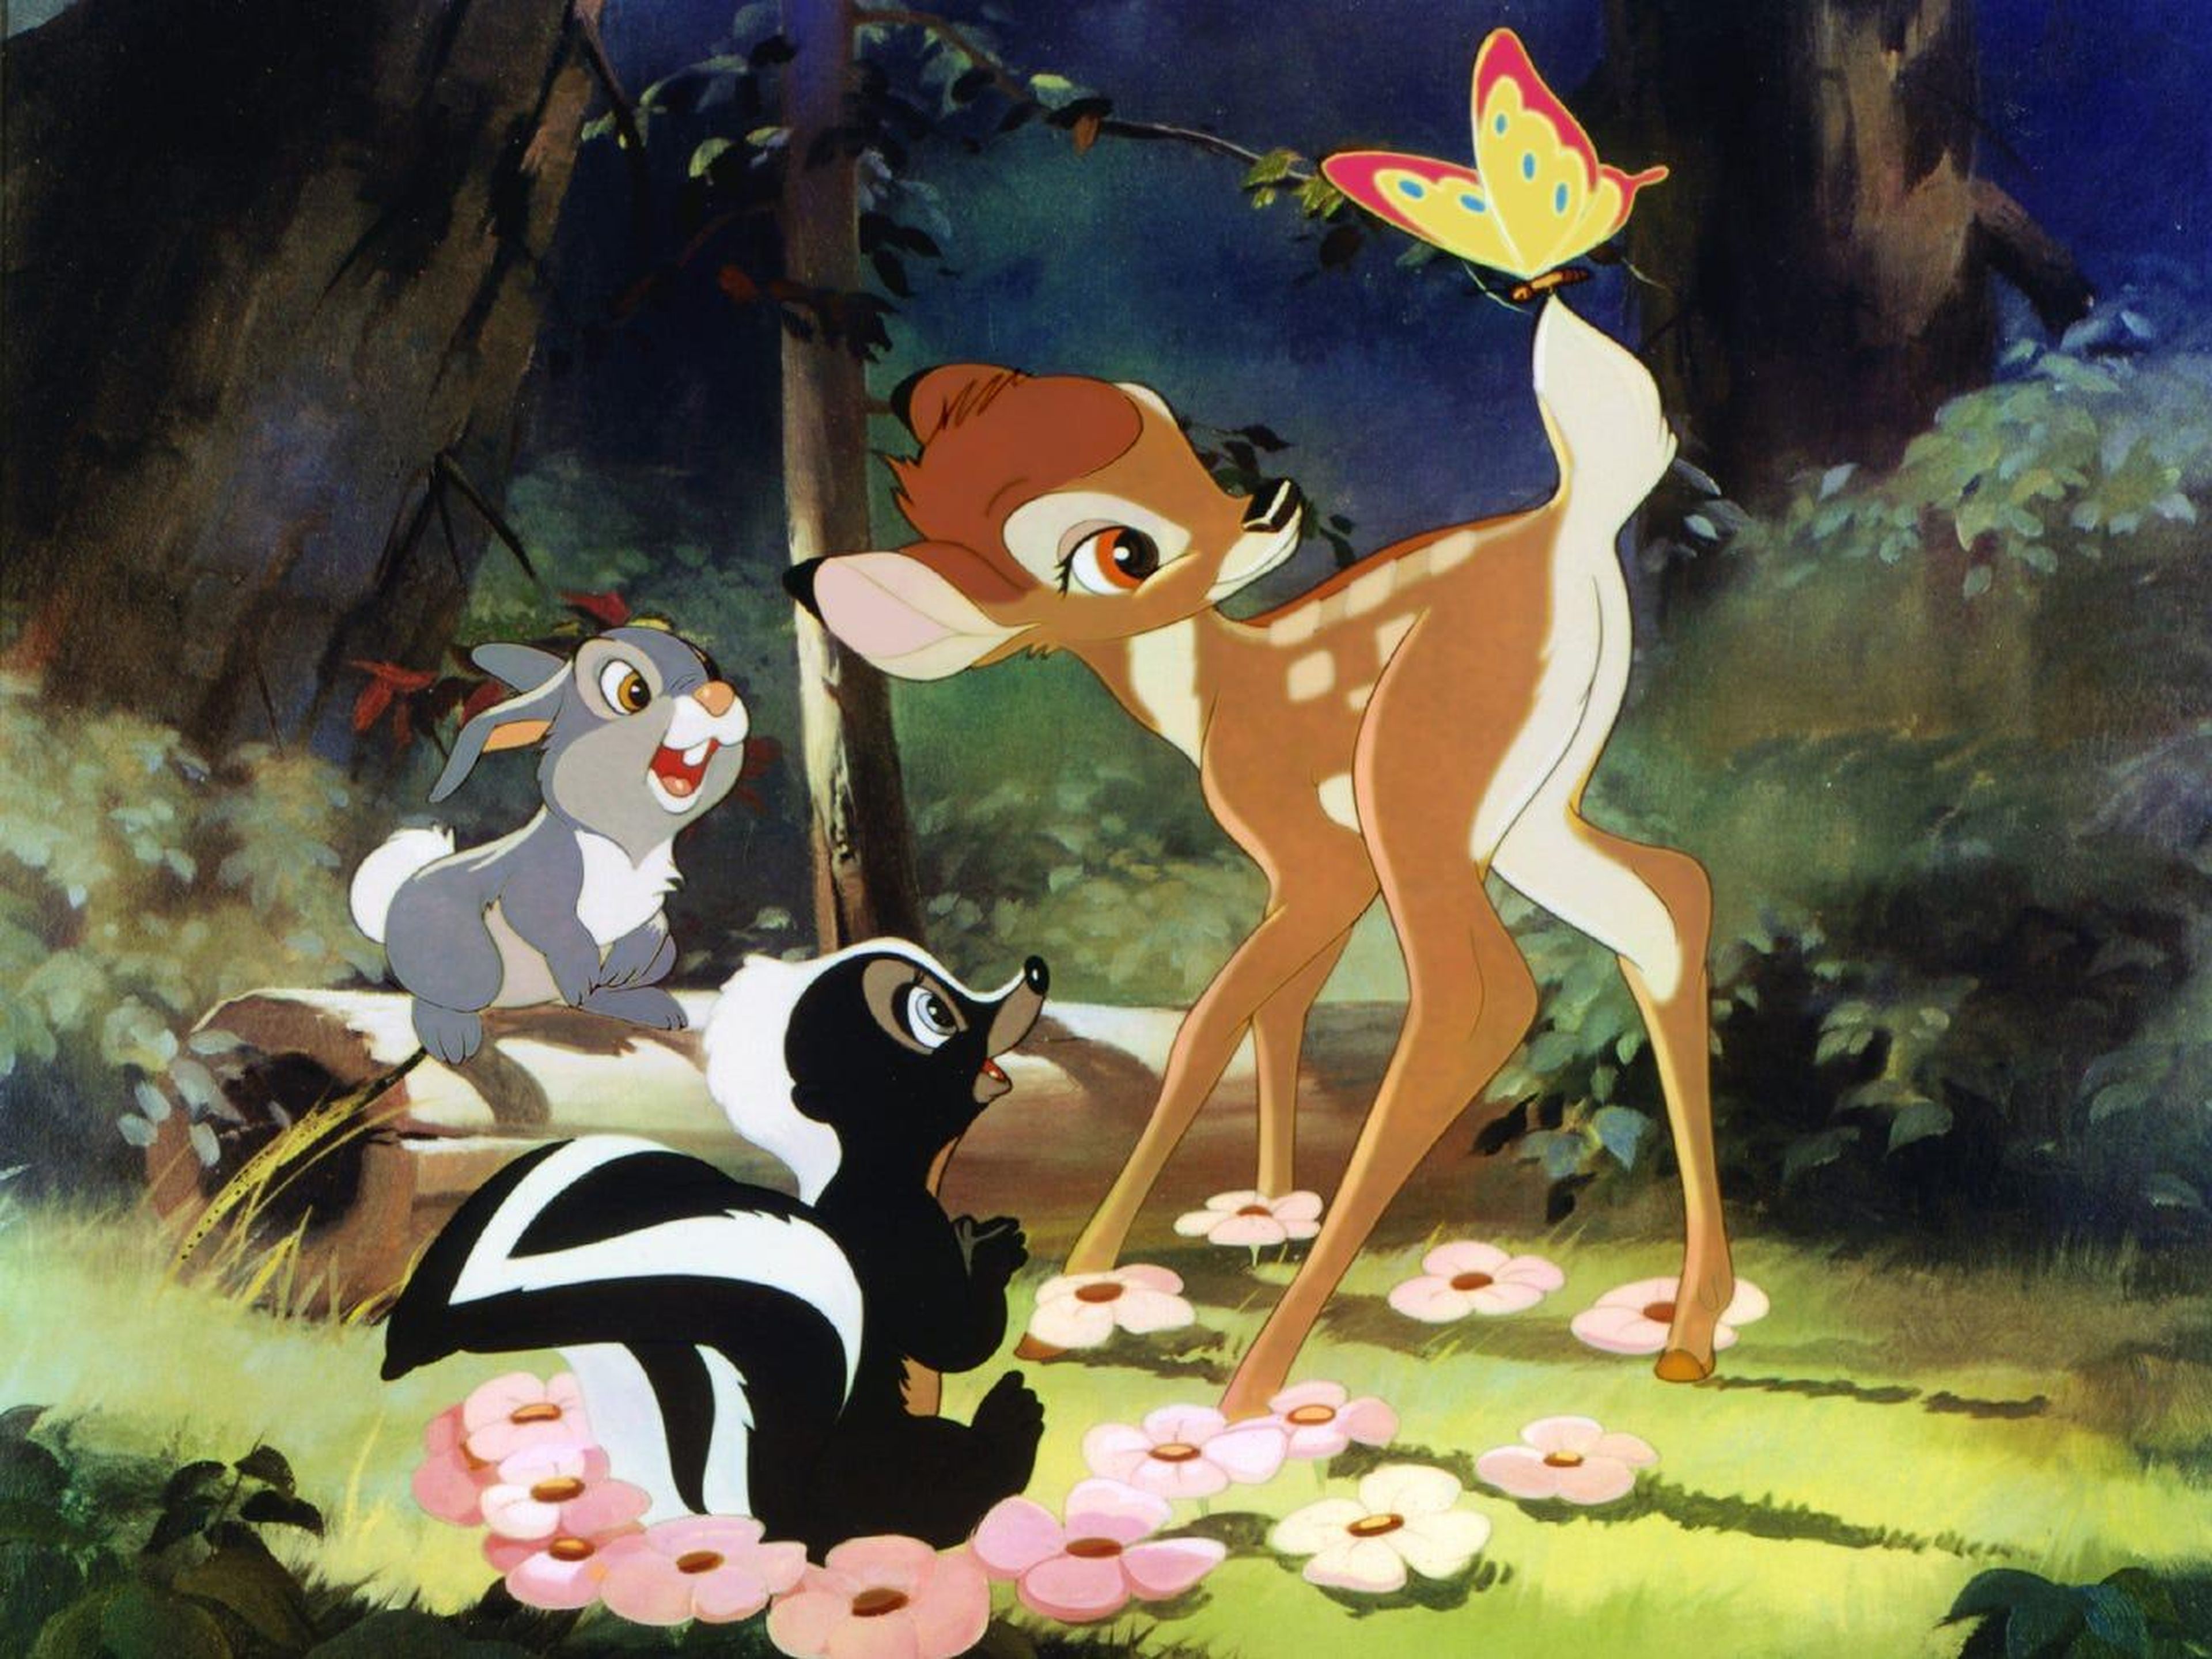 El Príncipe del bosque tendrá su propia película de Disney.